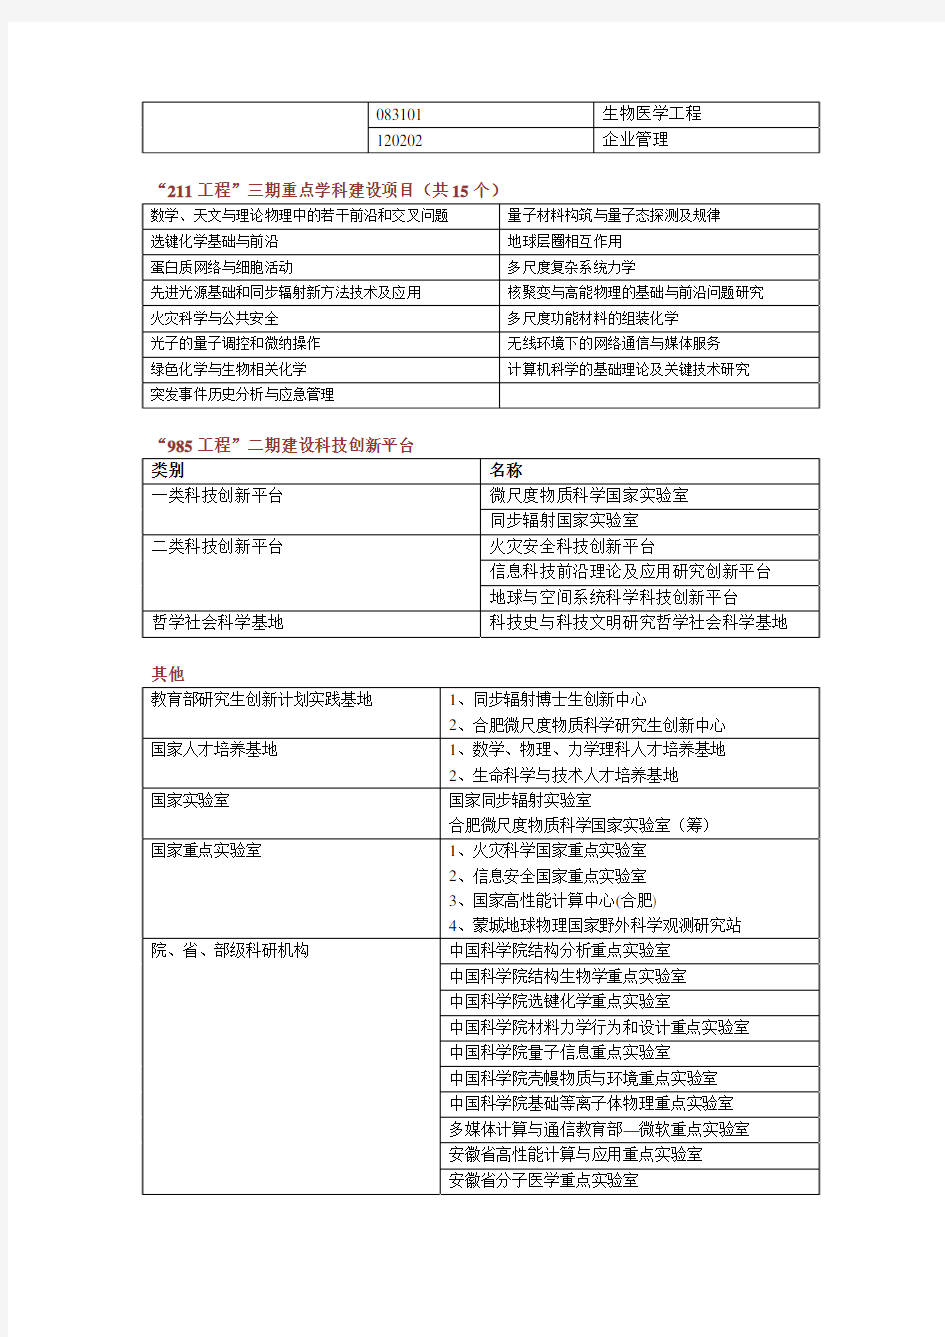 中国科学技术大学学科建设一览表-中国科学技术大学研究生院